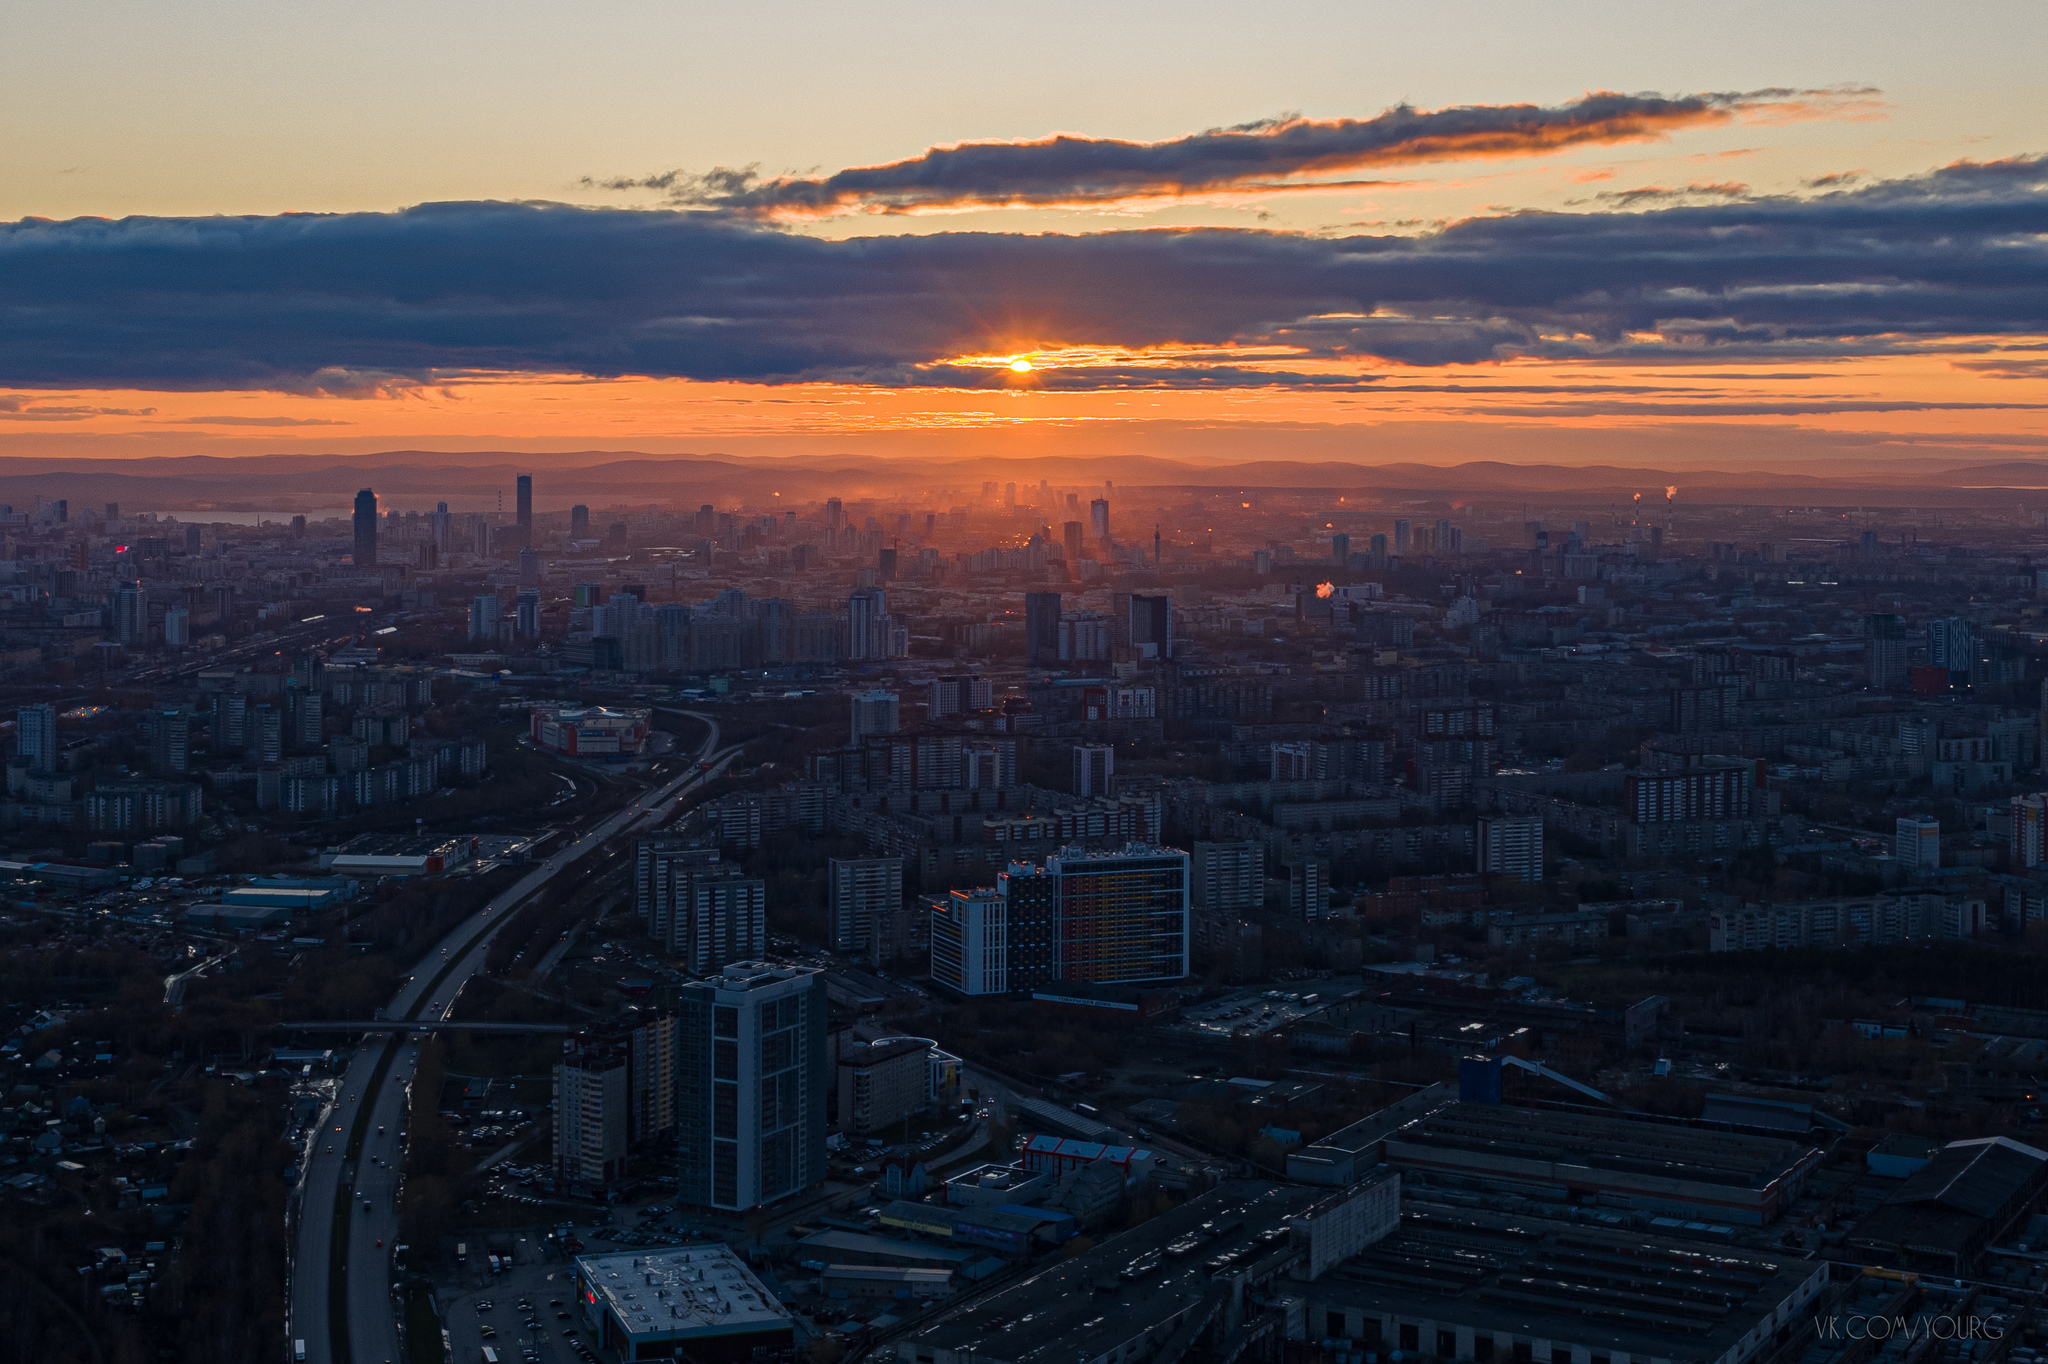 Sunset over Yekaterinburg - My, Sunset, Dji, DJI Mavic PRO, Yekaterinburg, Drone, The photo